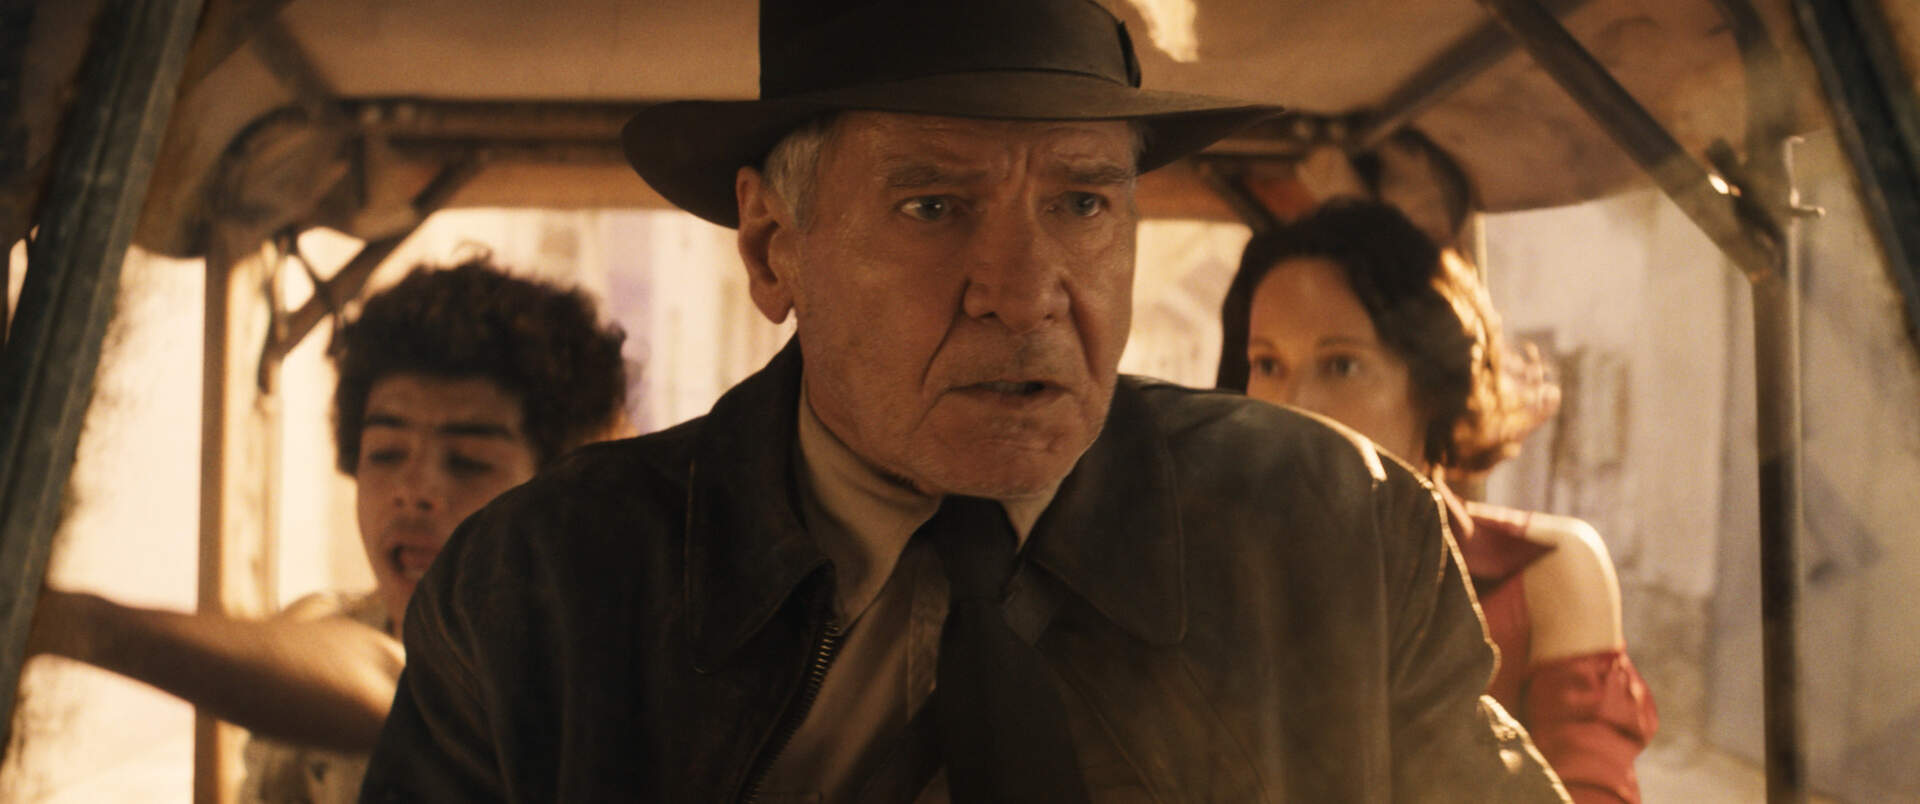 Indiana Jones und das Rad des Schicksals - Szenenbild 7 von 28